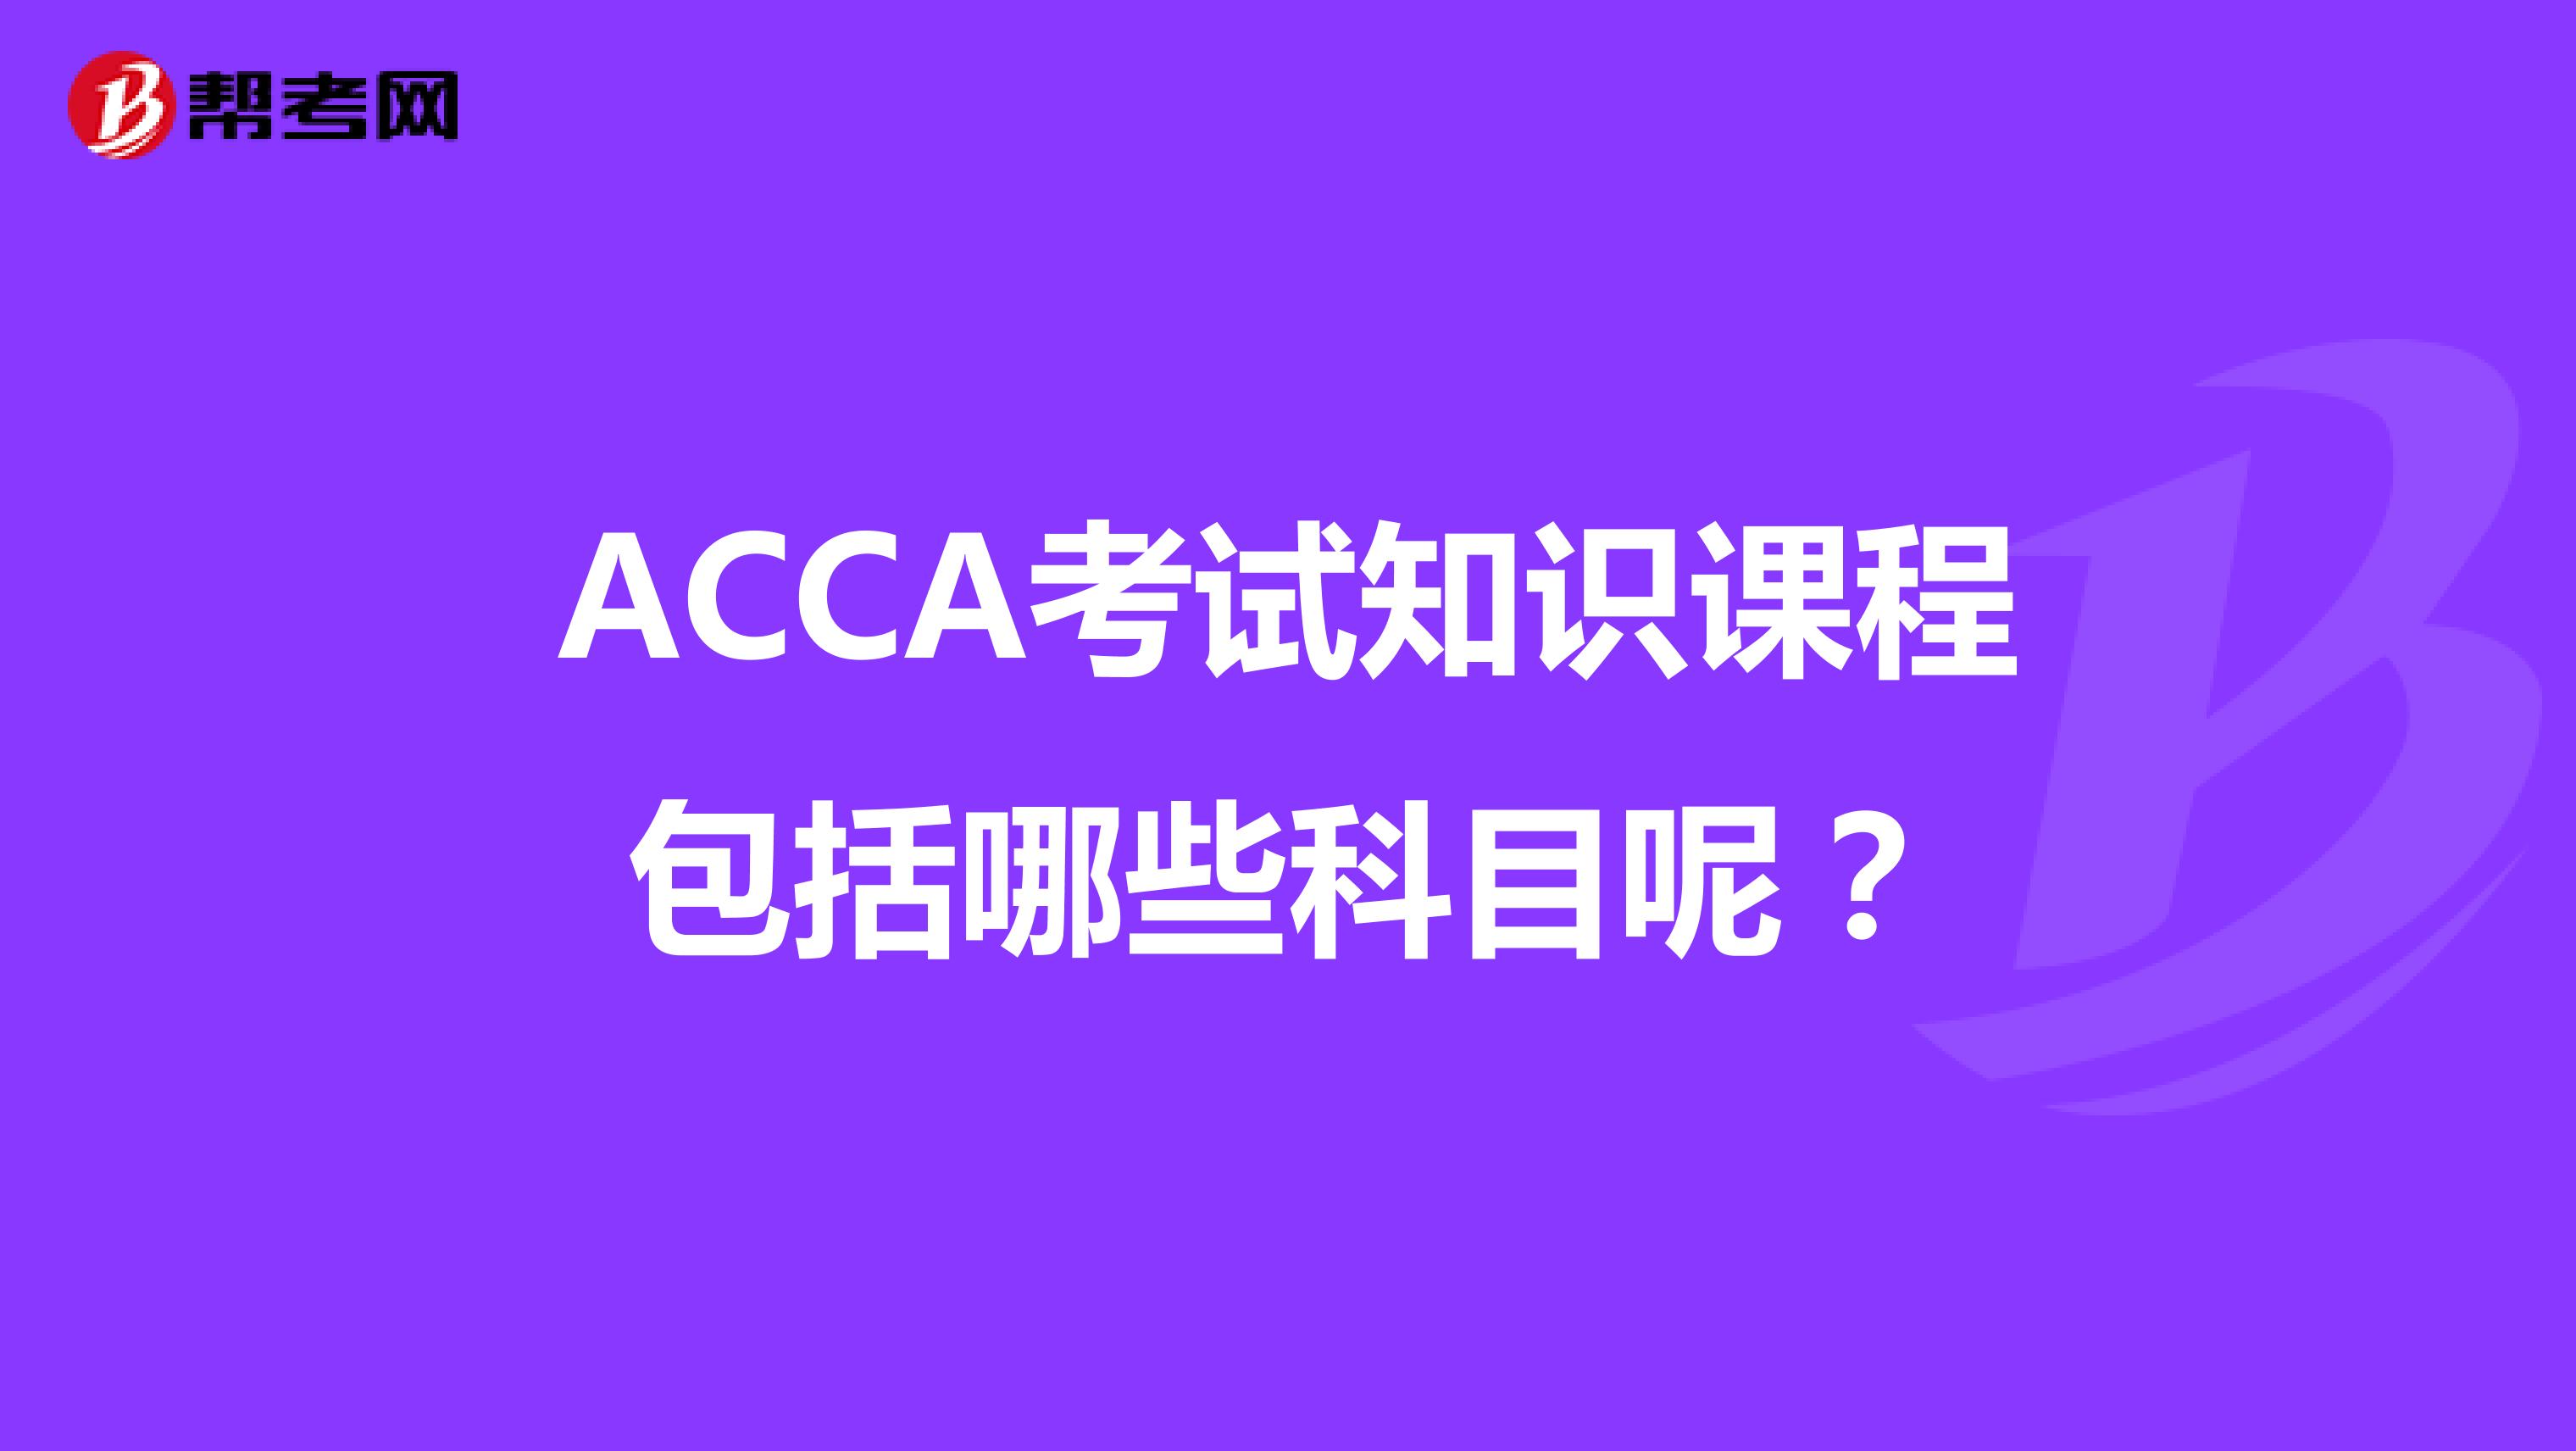 ACCA考试知识课程包括哪些科目呢？